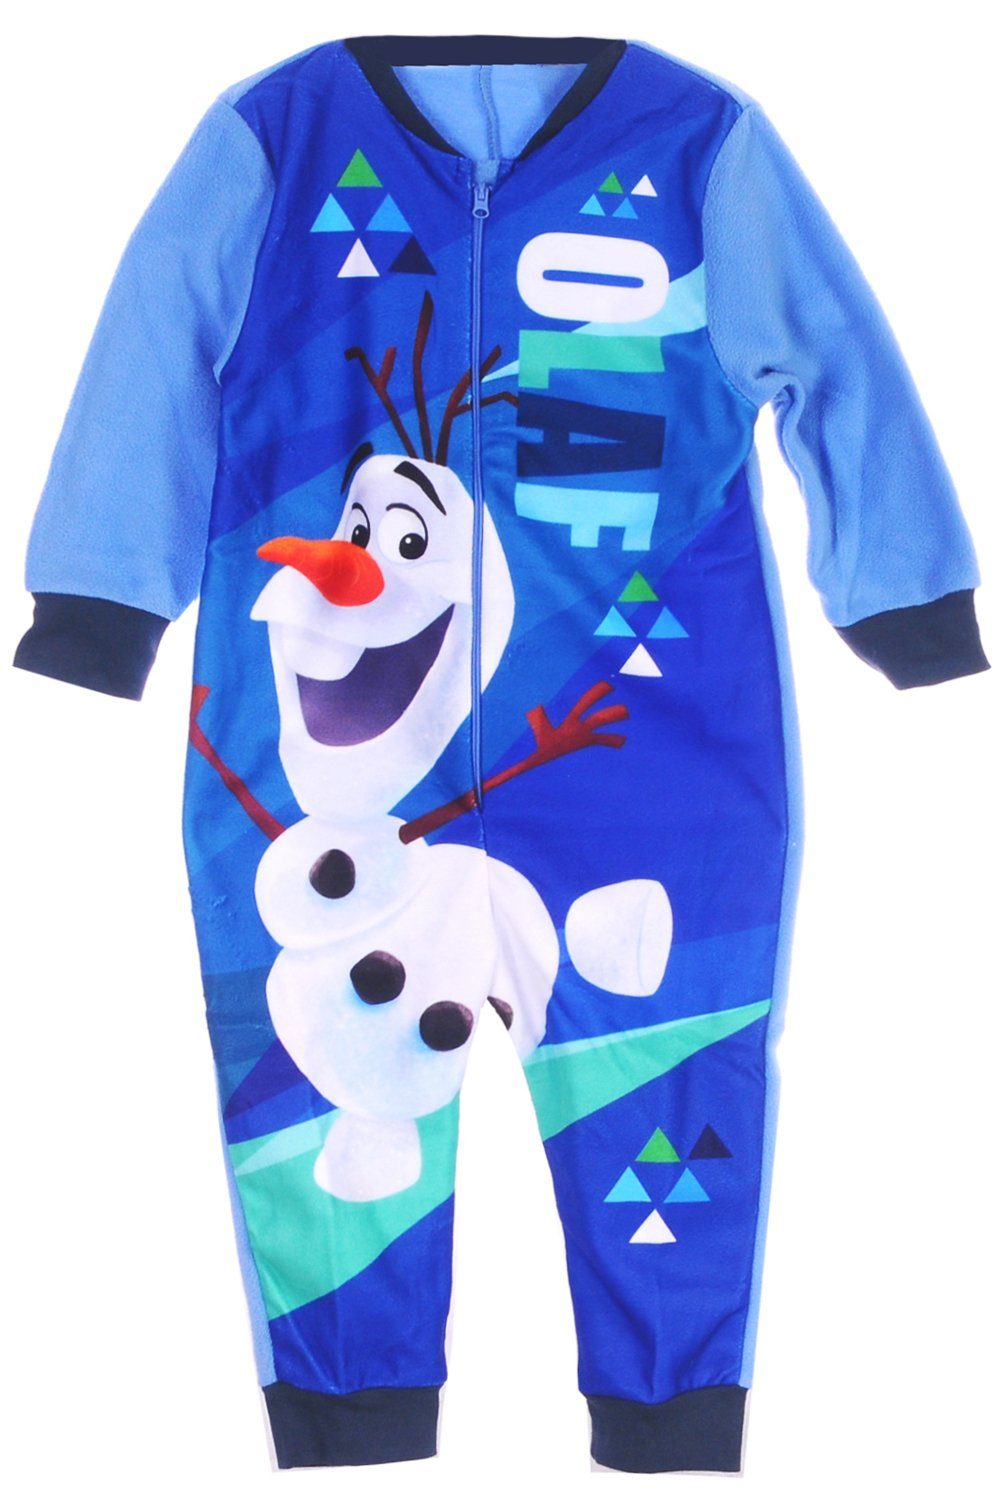 Fleeceoverall Schlafanzug Overall Einteiler Pyjama 92 98 104 für Kinder,  Größen: 18-24Mon (80-92), 2-3J (86-98), 3-4J (92-104), 4-5J (98-110)